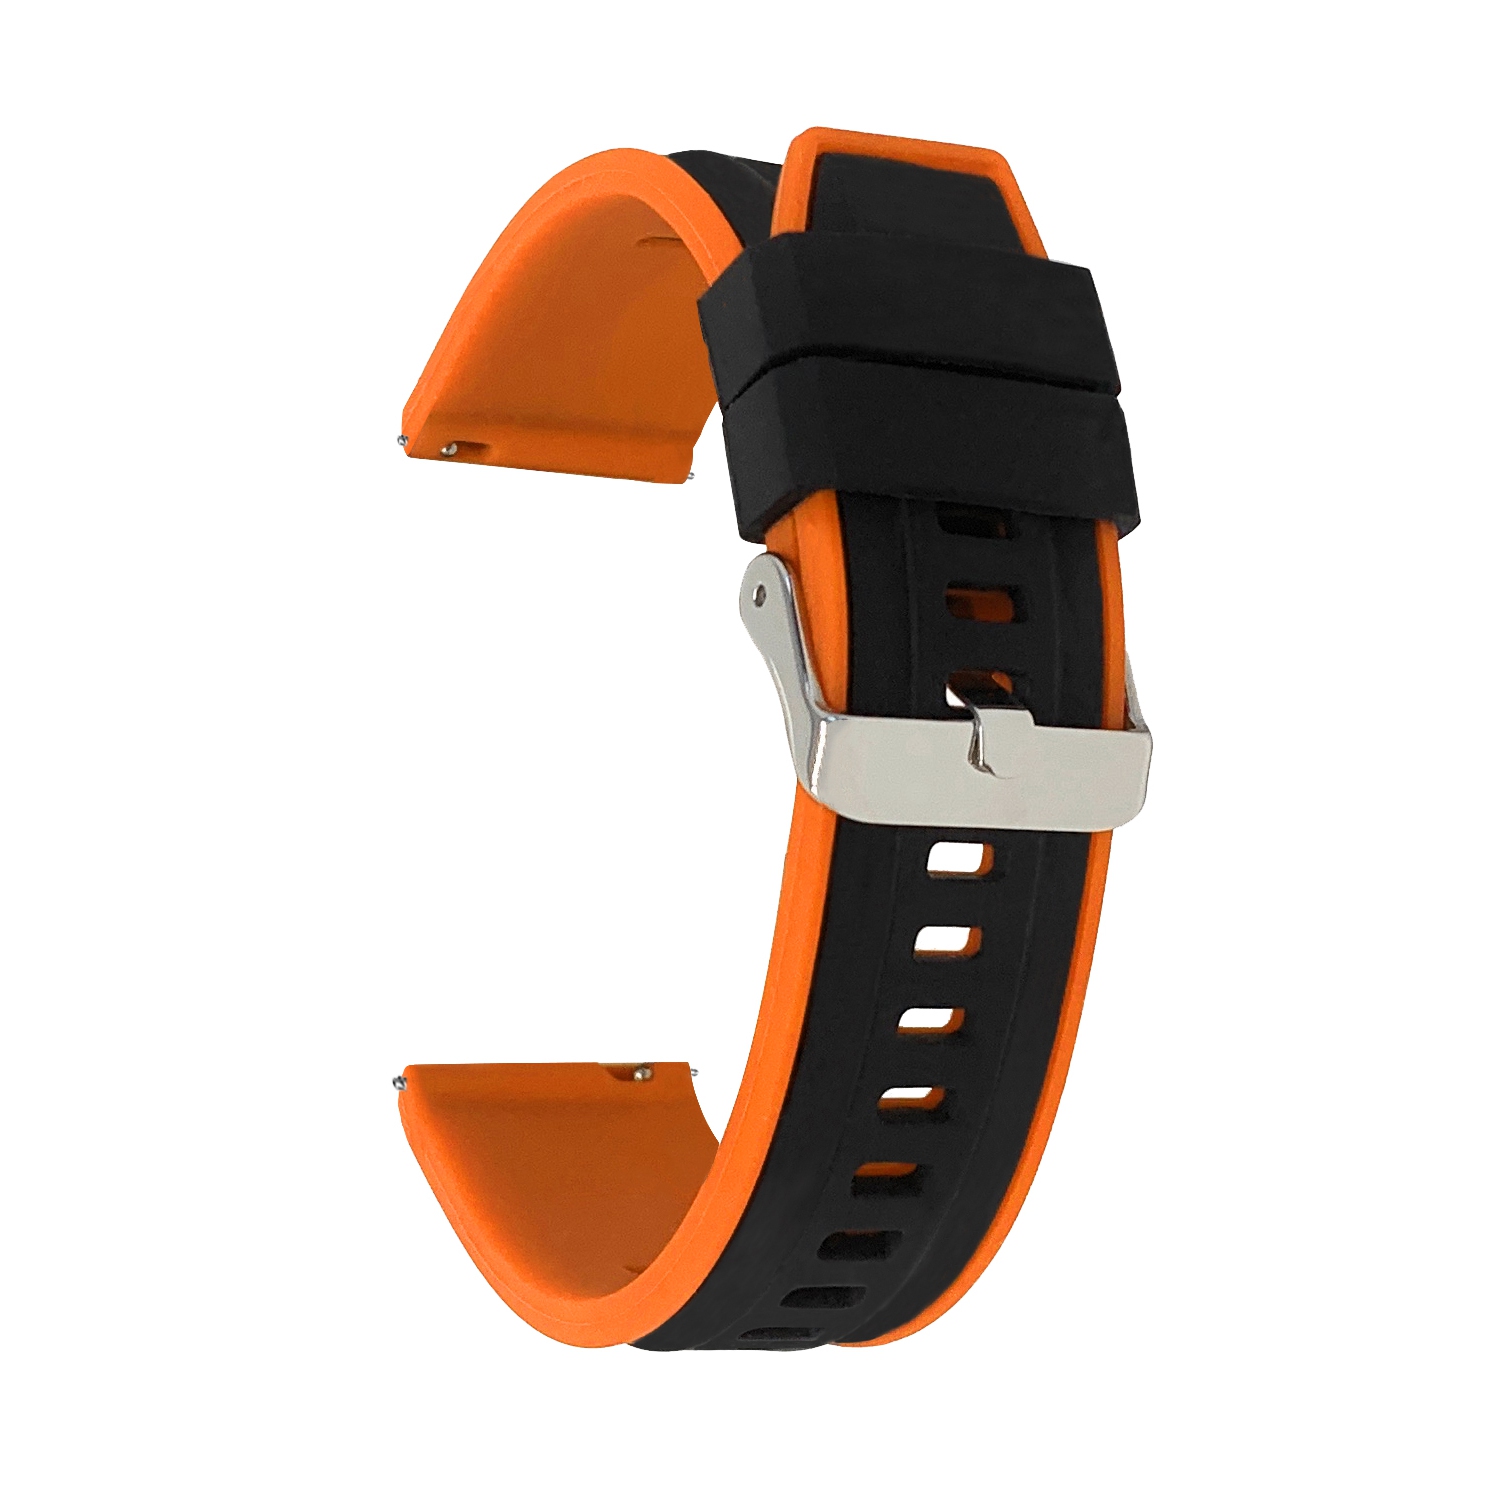 Bandini Quick Release Two-Tone Rubber Silicone Smart Watch Strap For Garmin Venu Sq - 20mm, Black / Orange / Silver Buckle